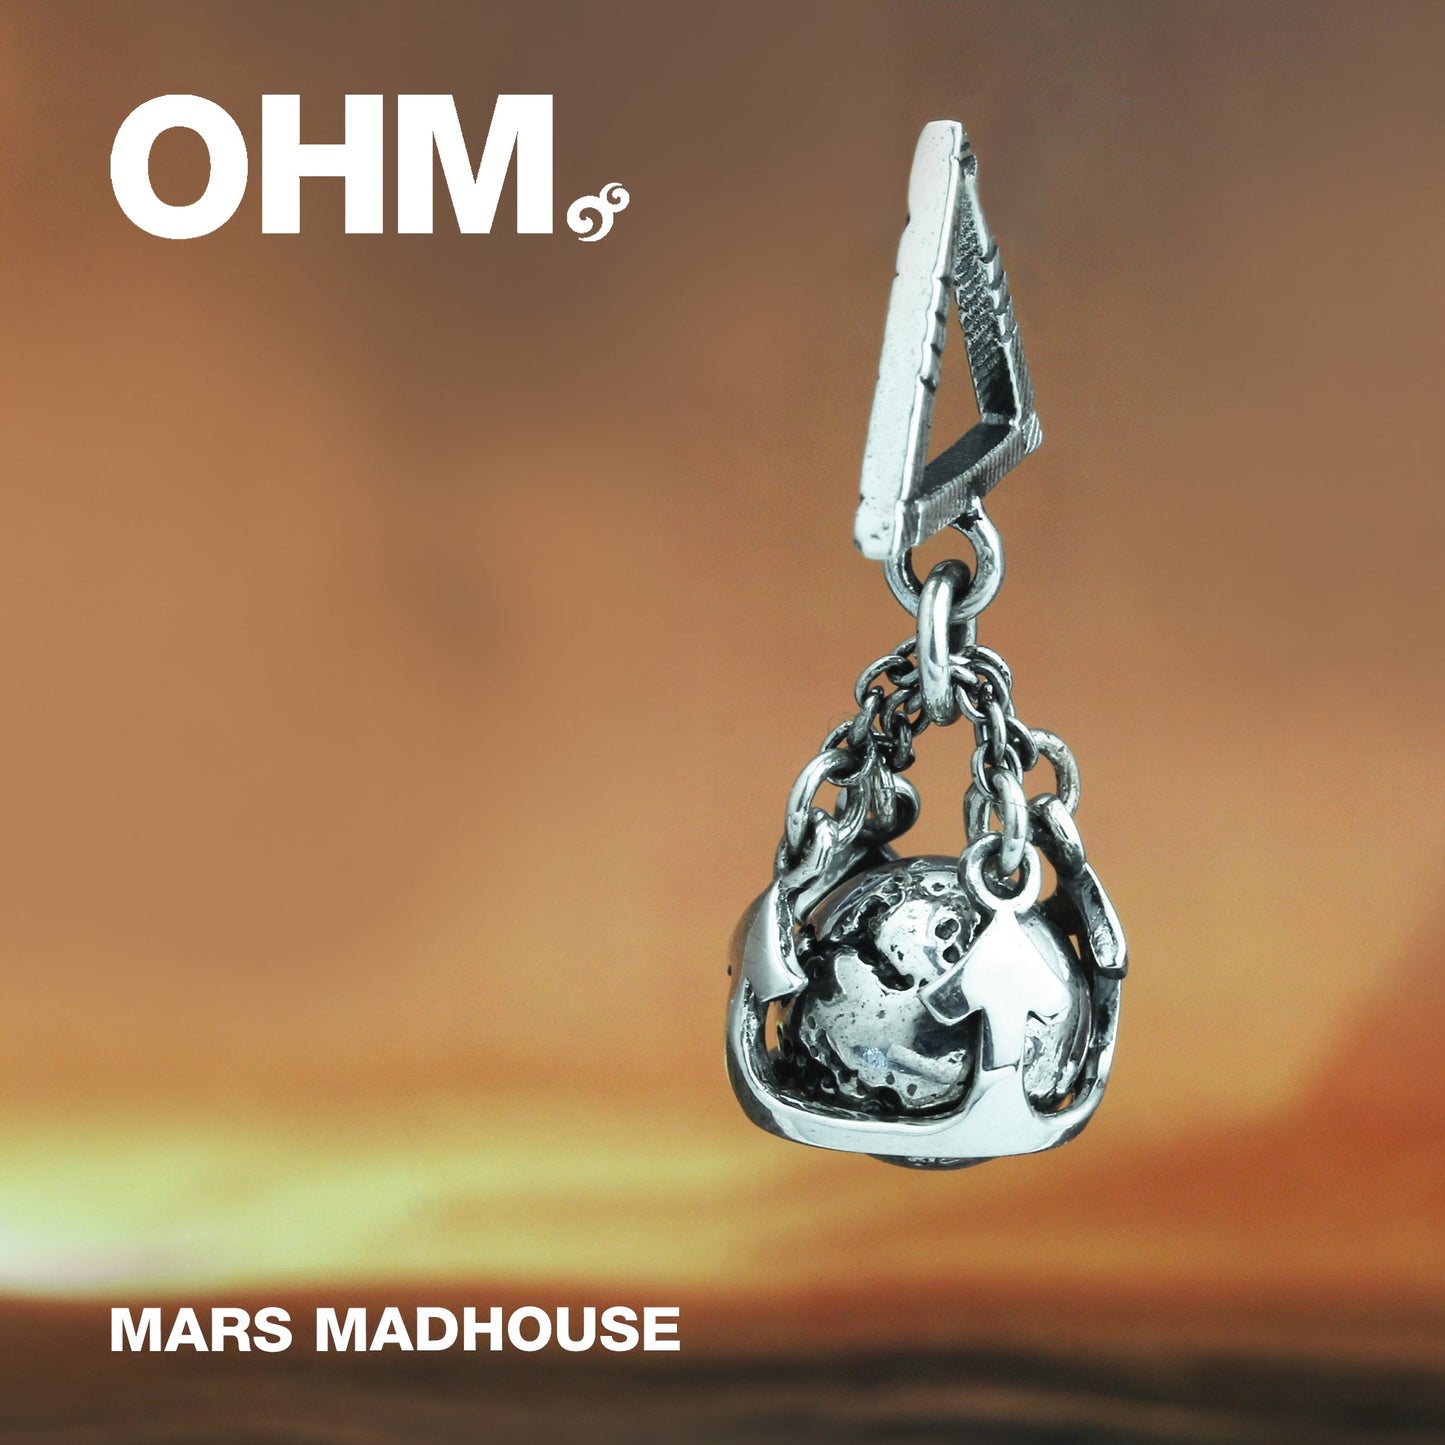 Mars Madhouse